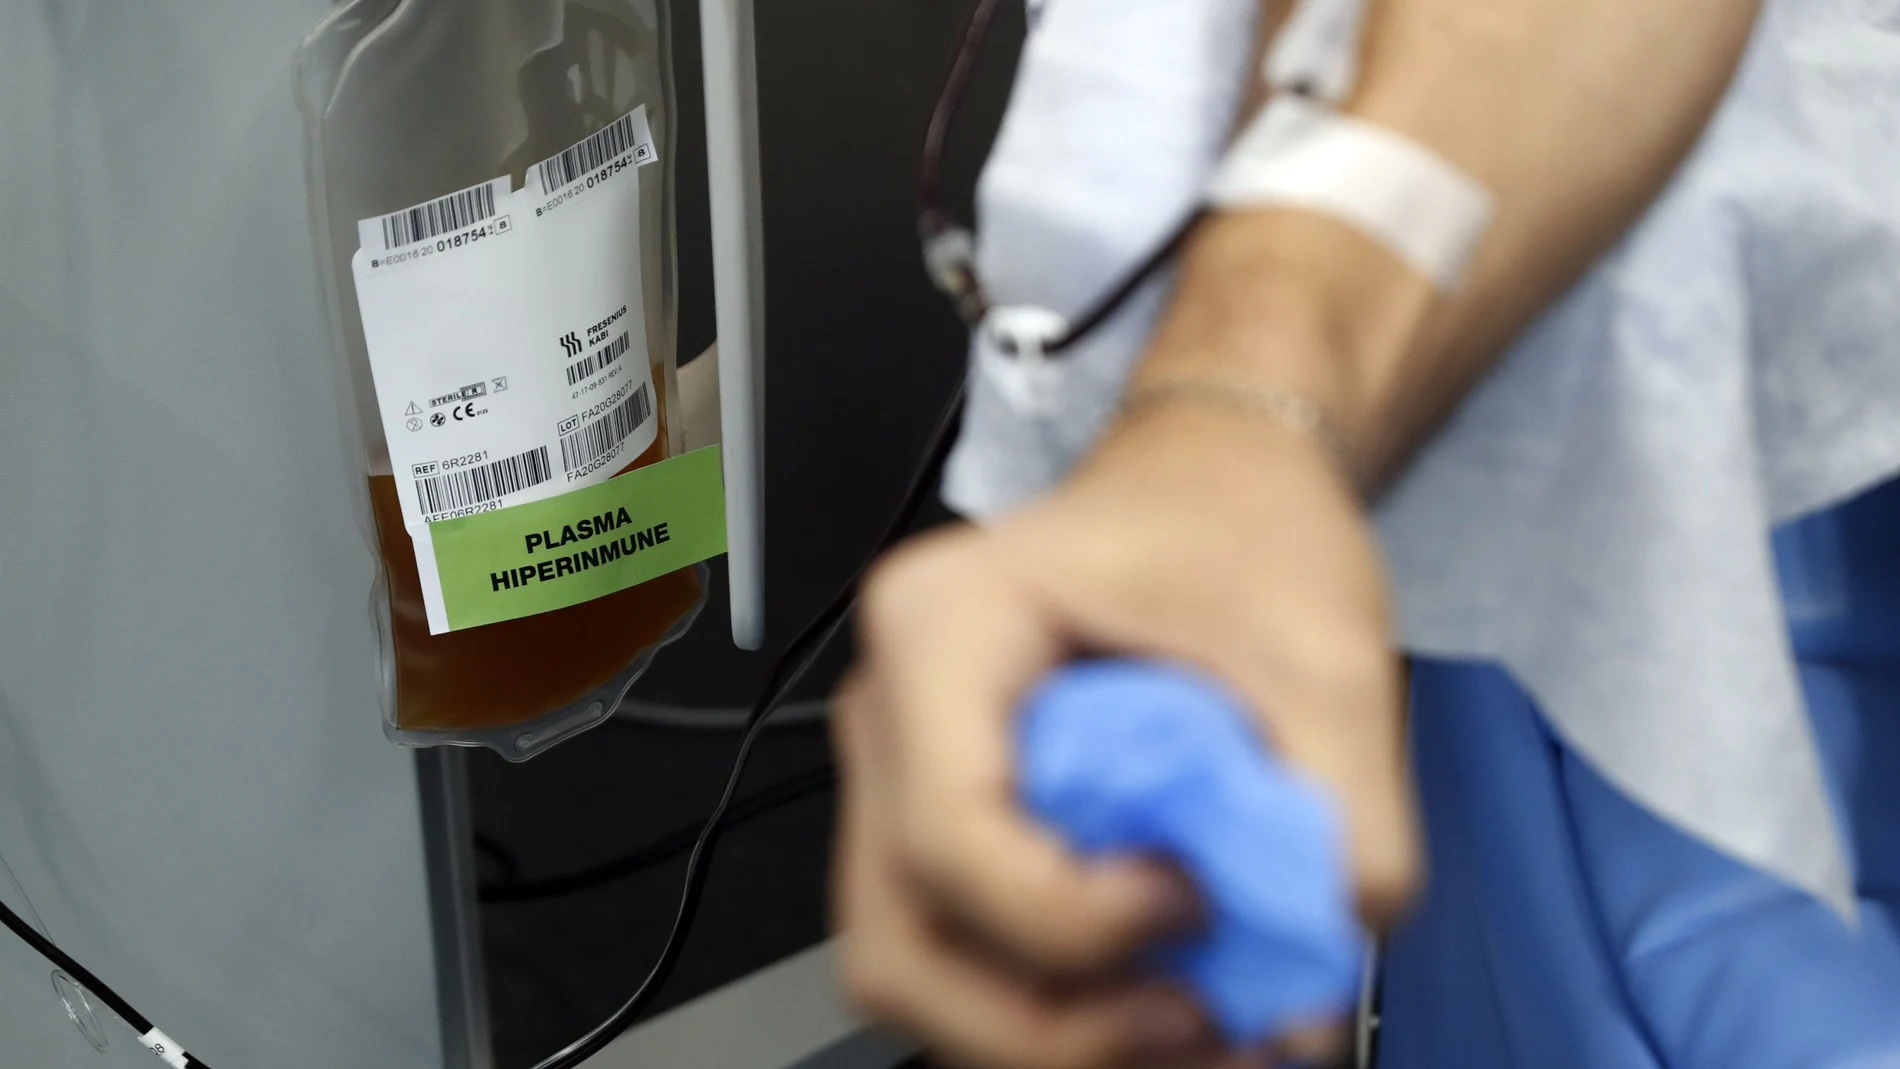 Por la pandemia cayó la donación de sangre y plasma. Ahora, los hospitales se ven obligados a reducir las dosis de los fármacos elaborados con ellos a pacientes con déficit de anticuerpos. Urge donar